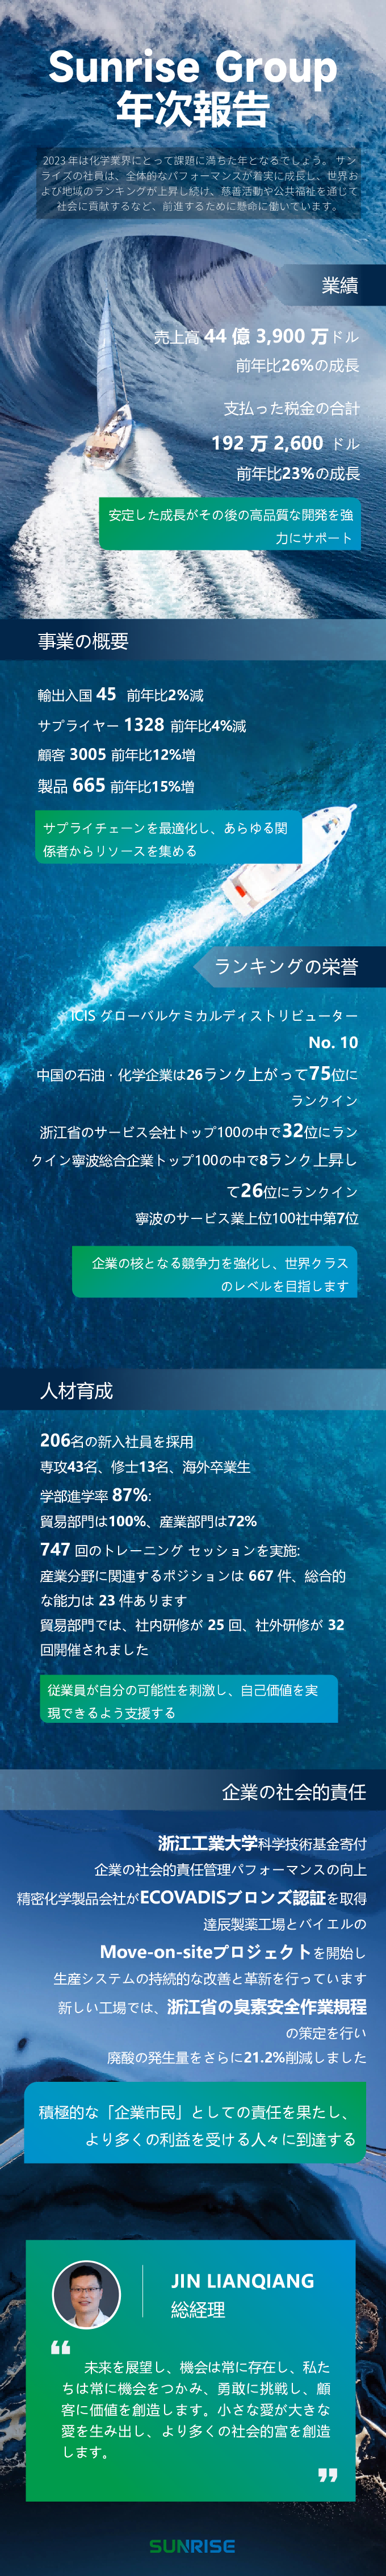 年报设计2023日文_0123(1)(1).png